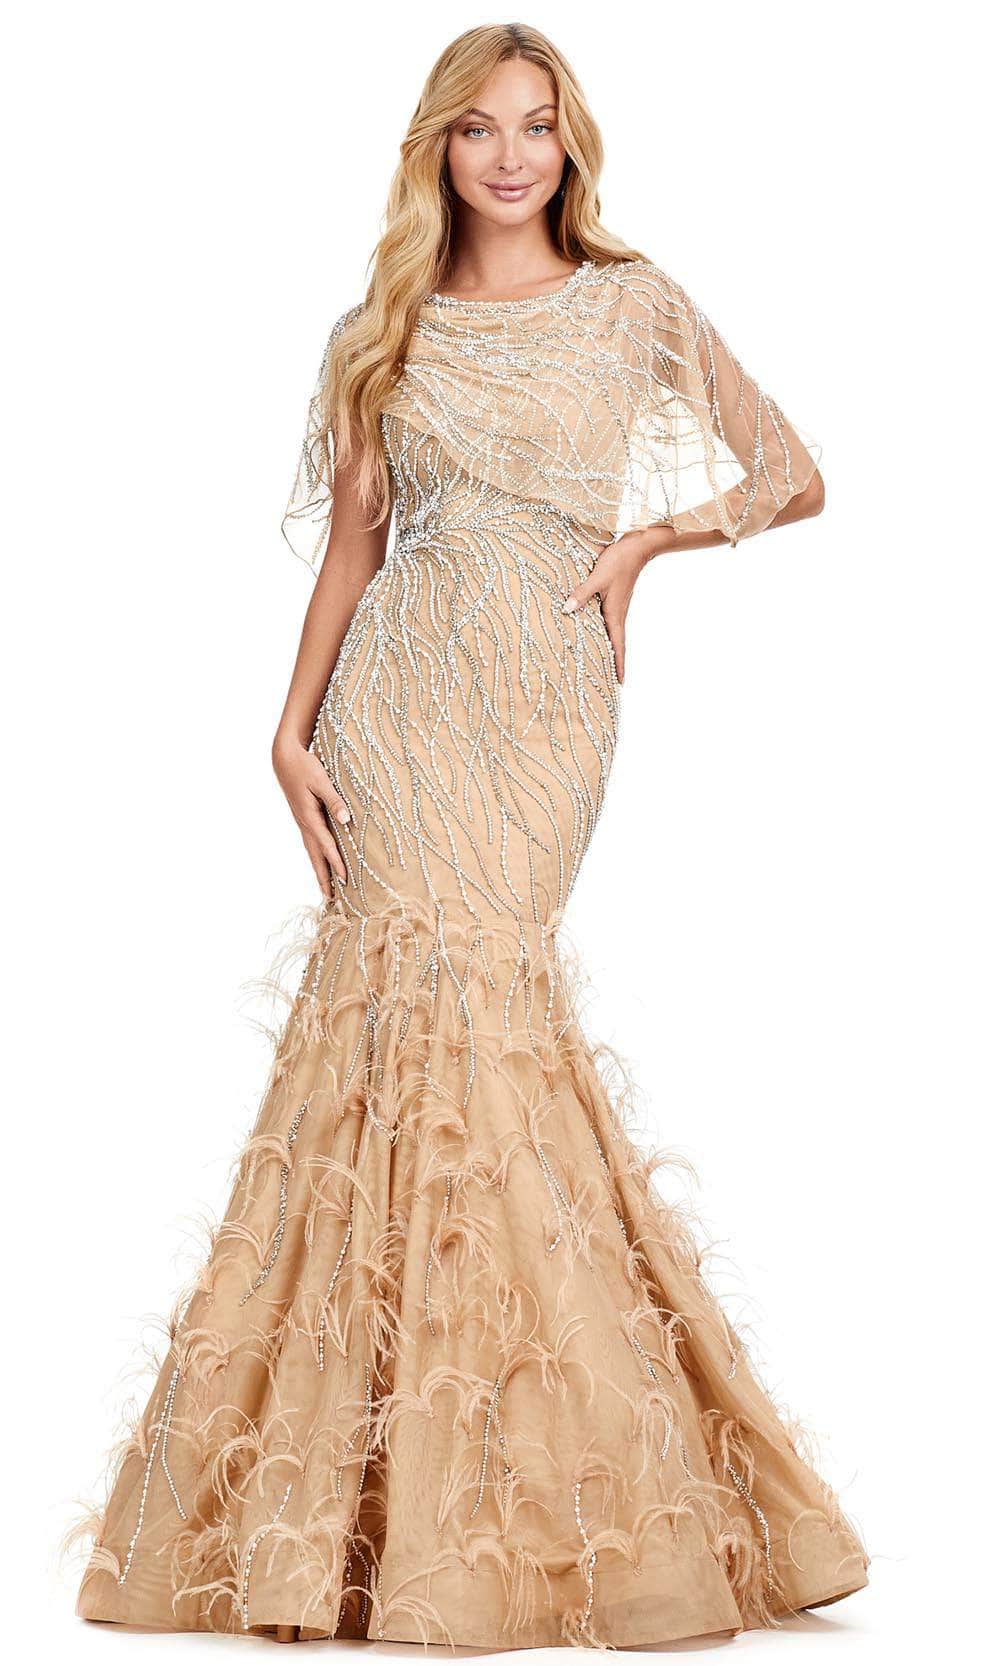 Ashley Lauren 11431 - Jewel Neck Beaded Evening Gown
